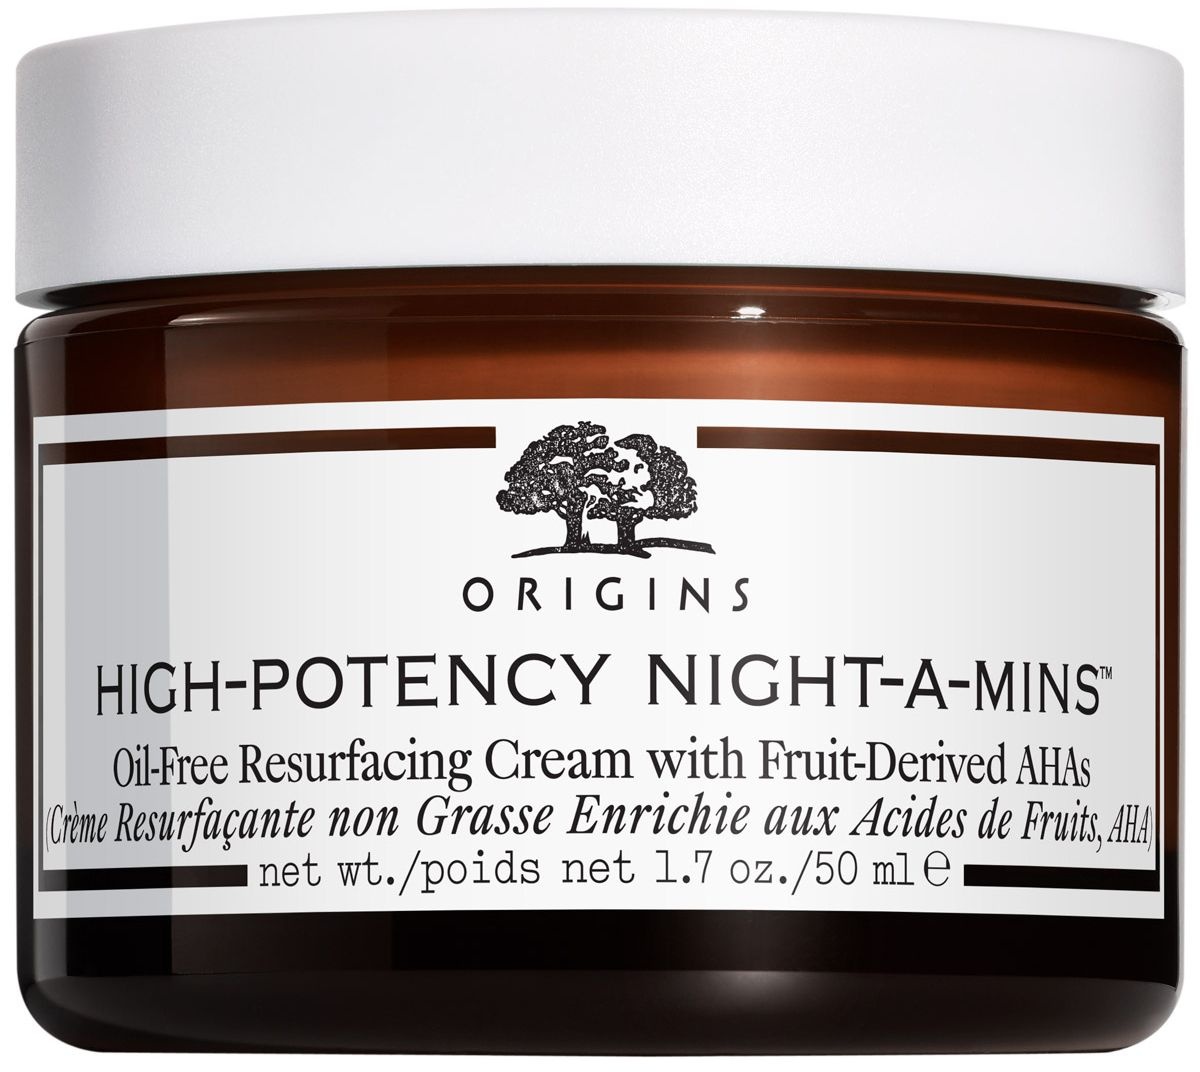 High Potency Night-A-MinsTM Crème Resurfaçante non Grasse Enrichie aux Acides de Fruits, AHAs 50 ml crème